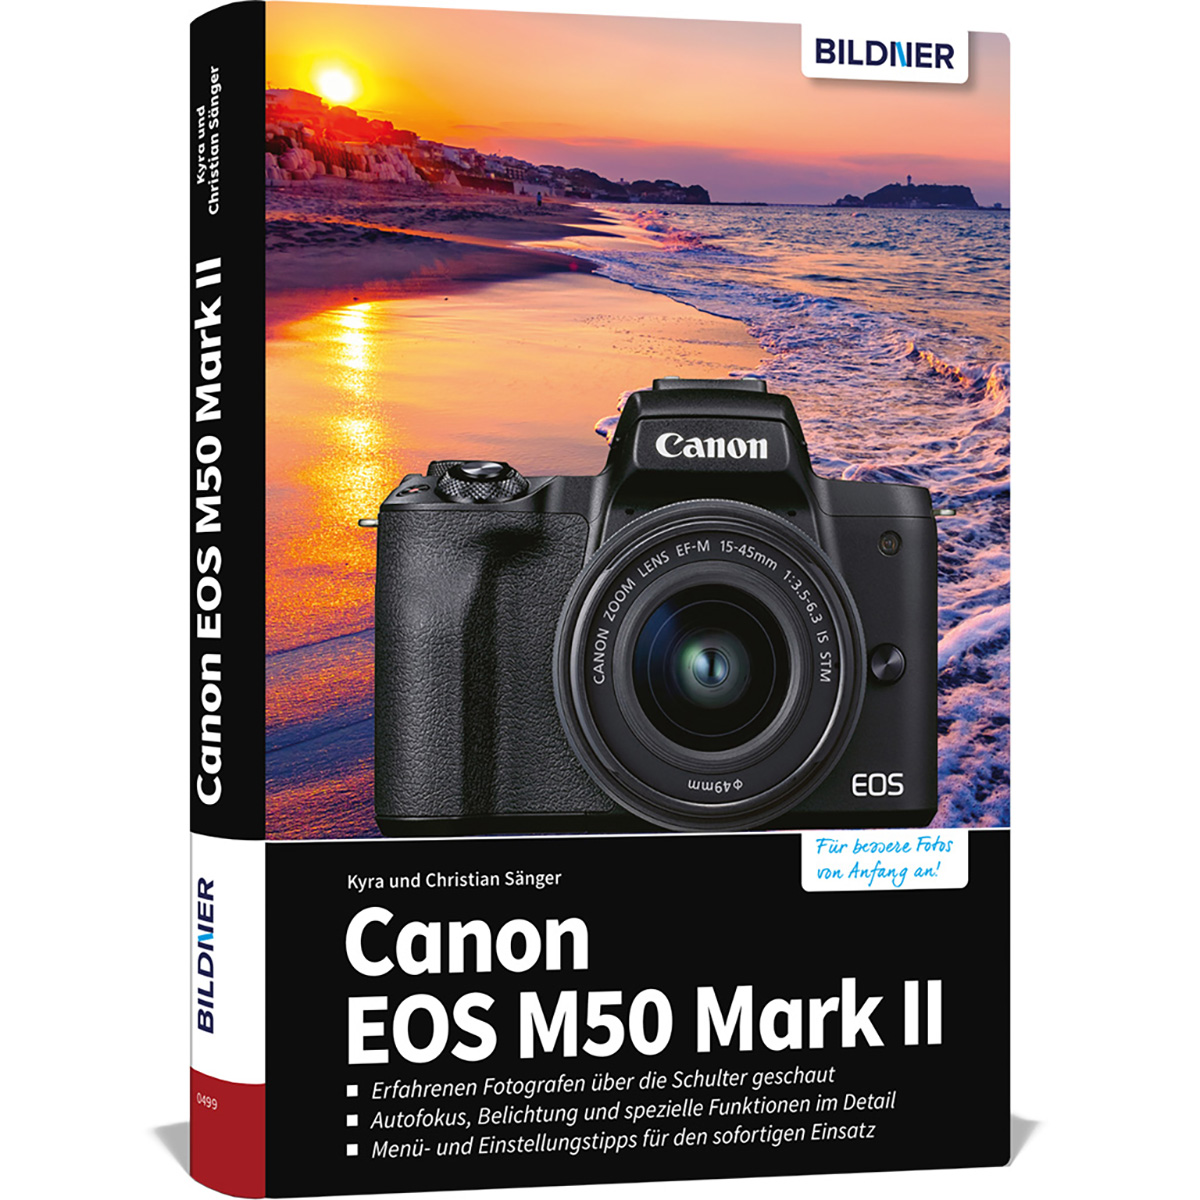 Canon EOS M50 Mark II Kamera! Das umfangreiche Ihrer Praxisbuch - zu